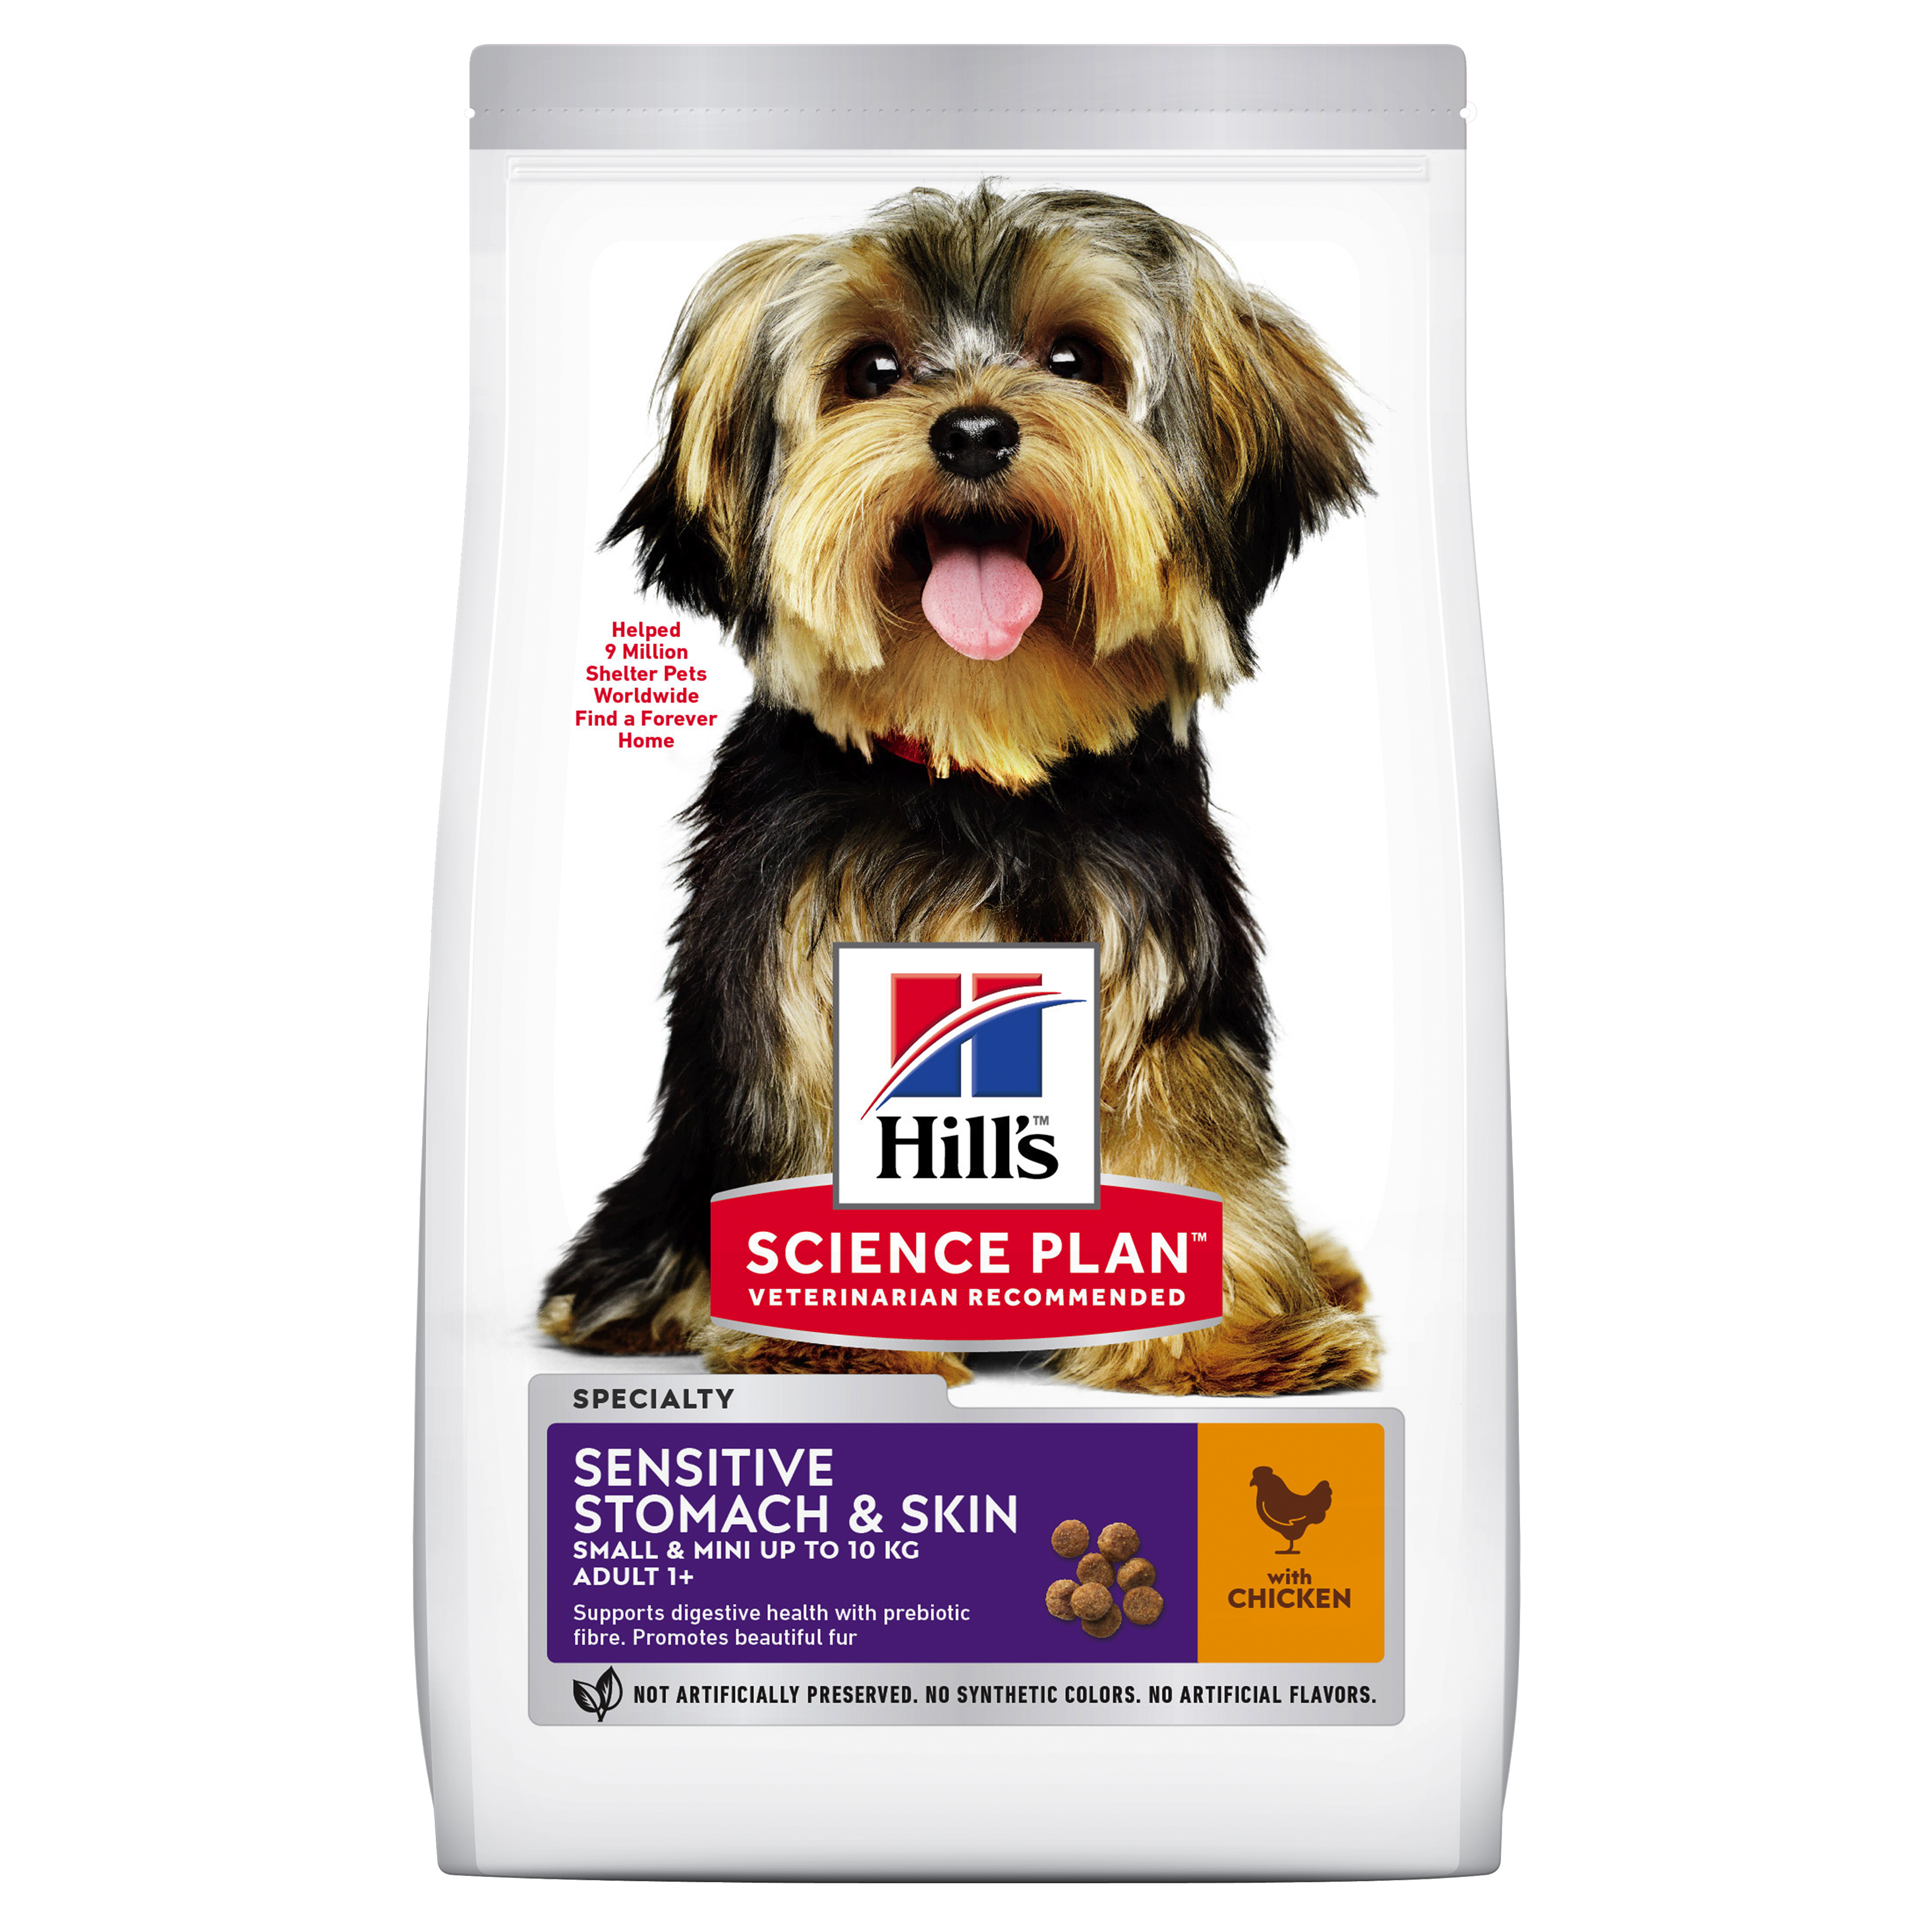 Hills собака с курицей. Hills sensitive Stomach для собак. Hills sensitive Stomach Skin для собак. Хиллс корм для собак. Корм Hills для собак мелких пород.